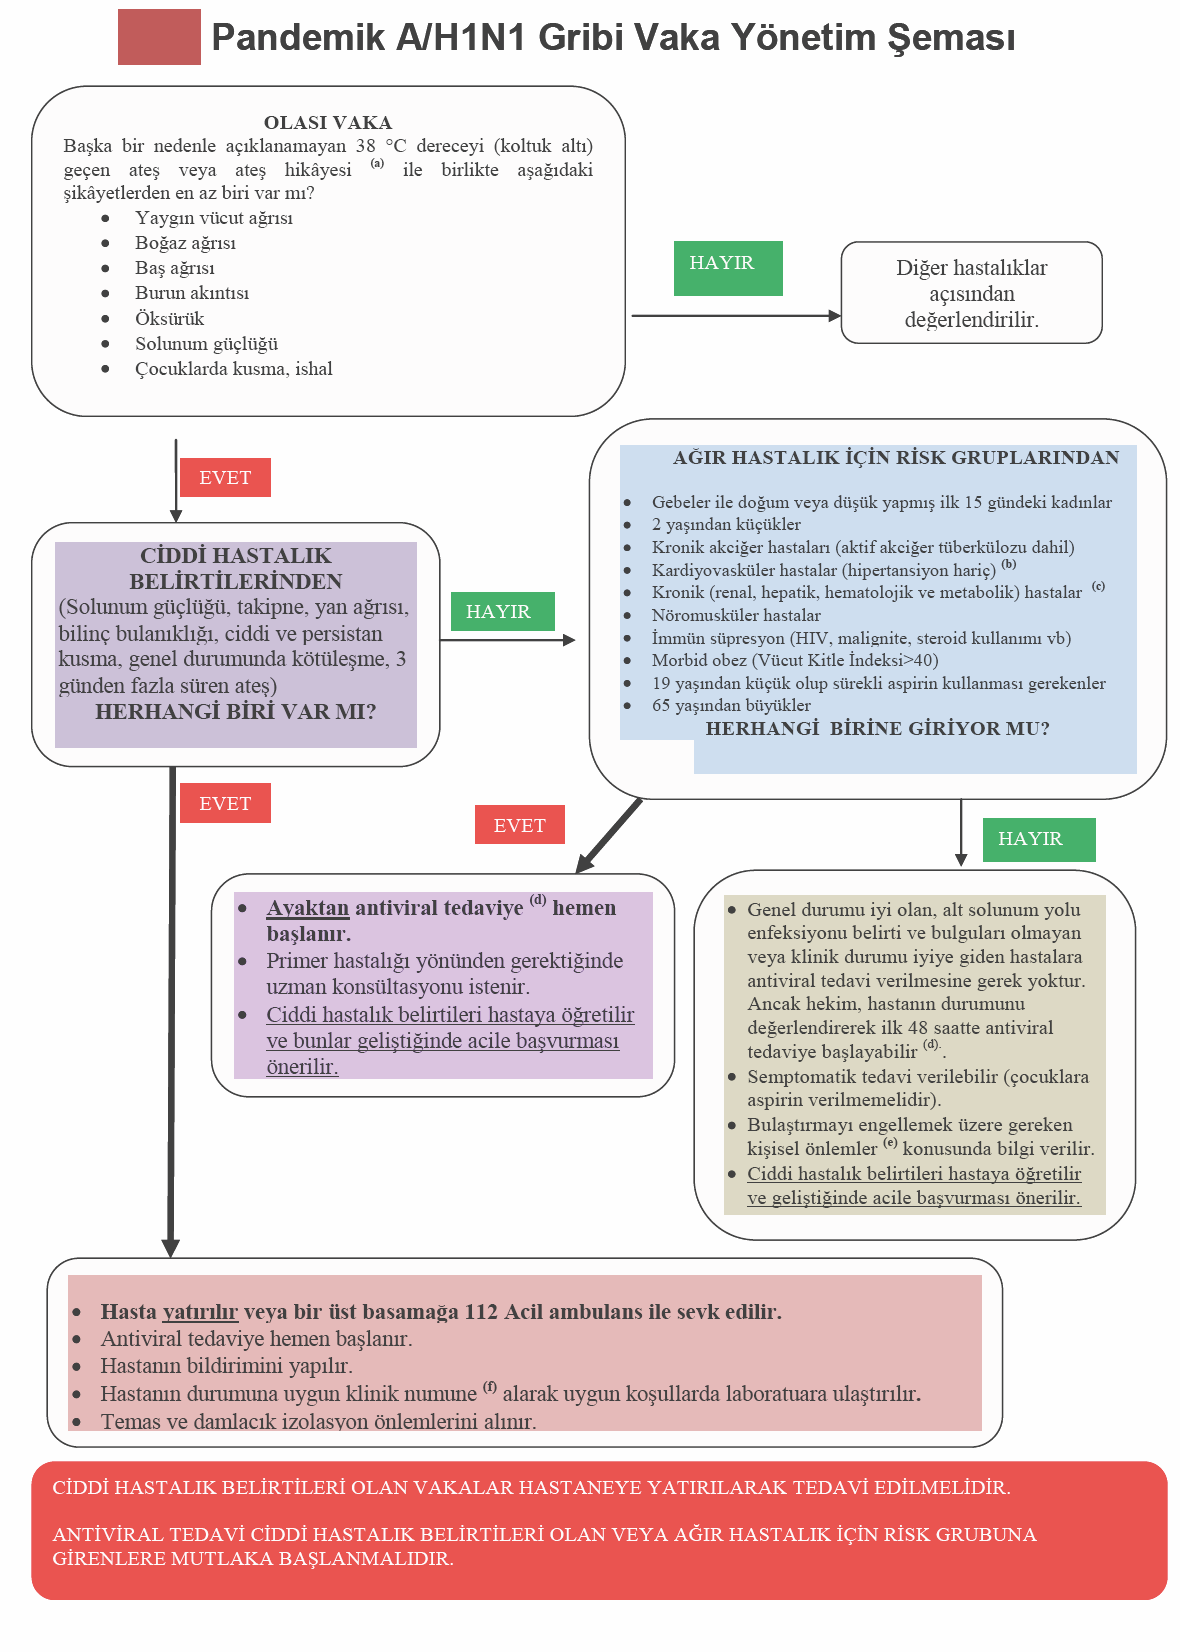 Sağlık Bakanlığı Pandemik İnfluenza Vaka Yönetim Şeması (24.11.